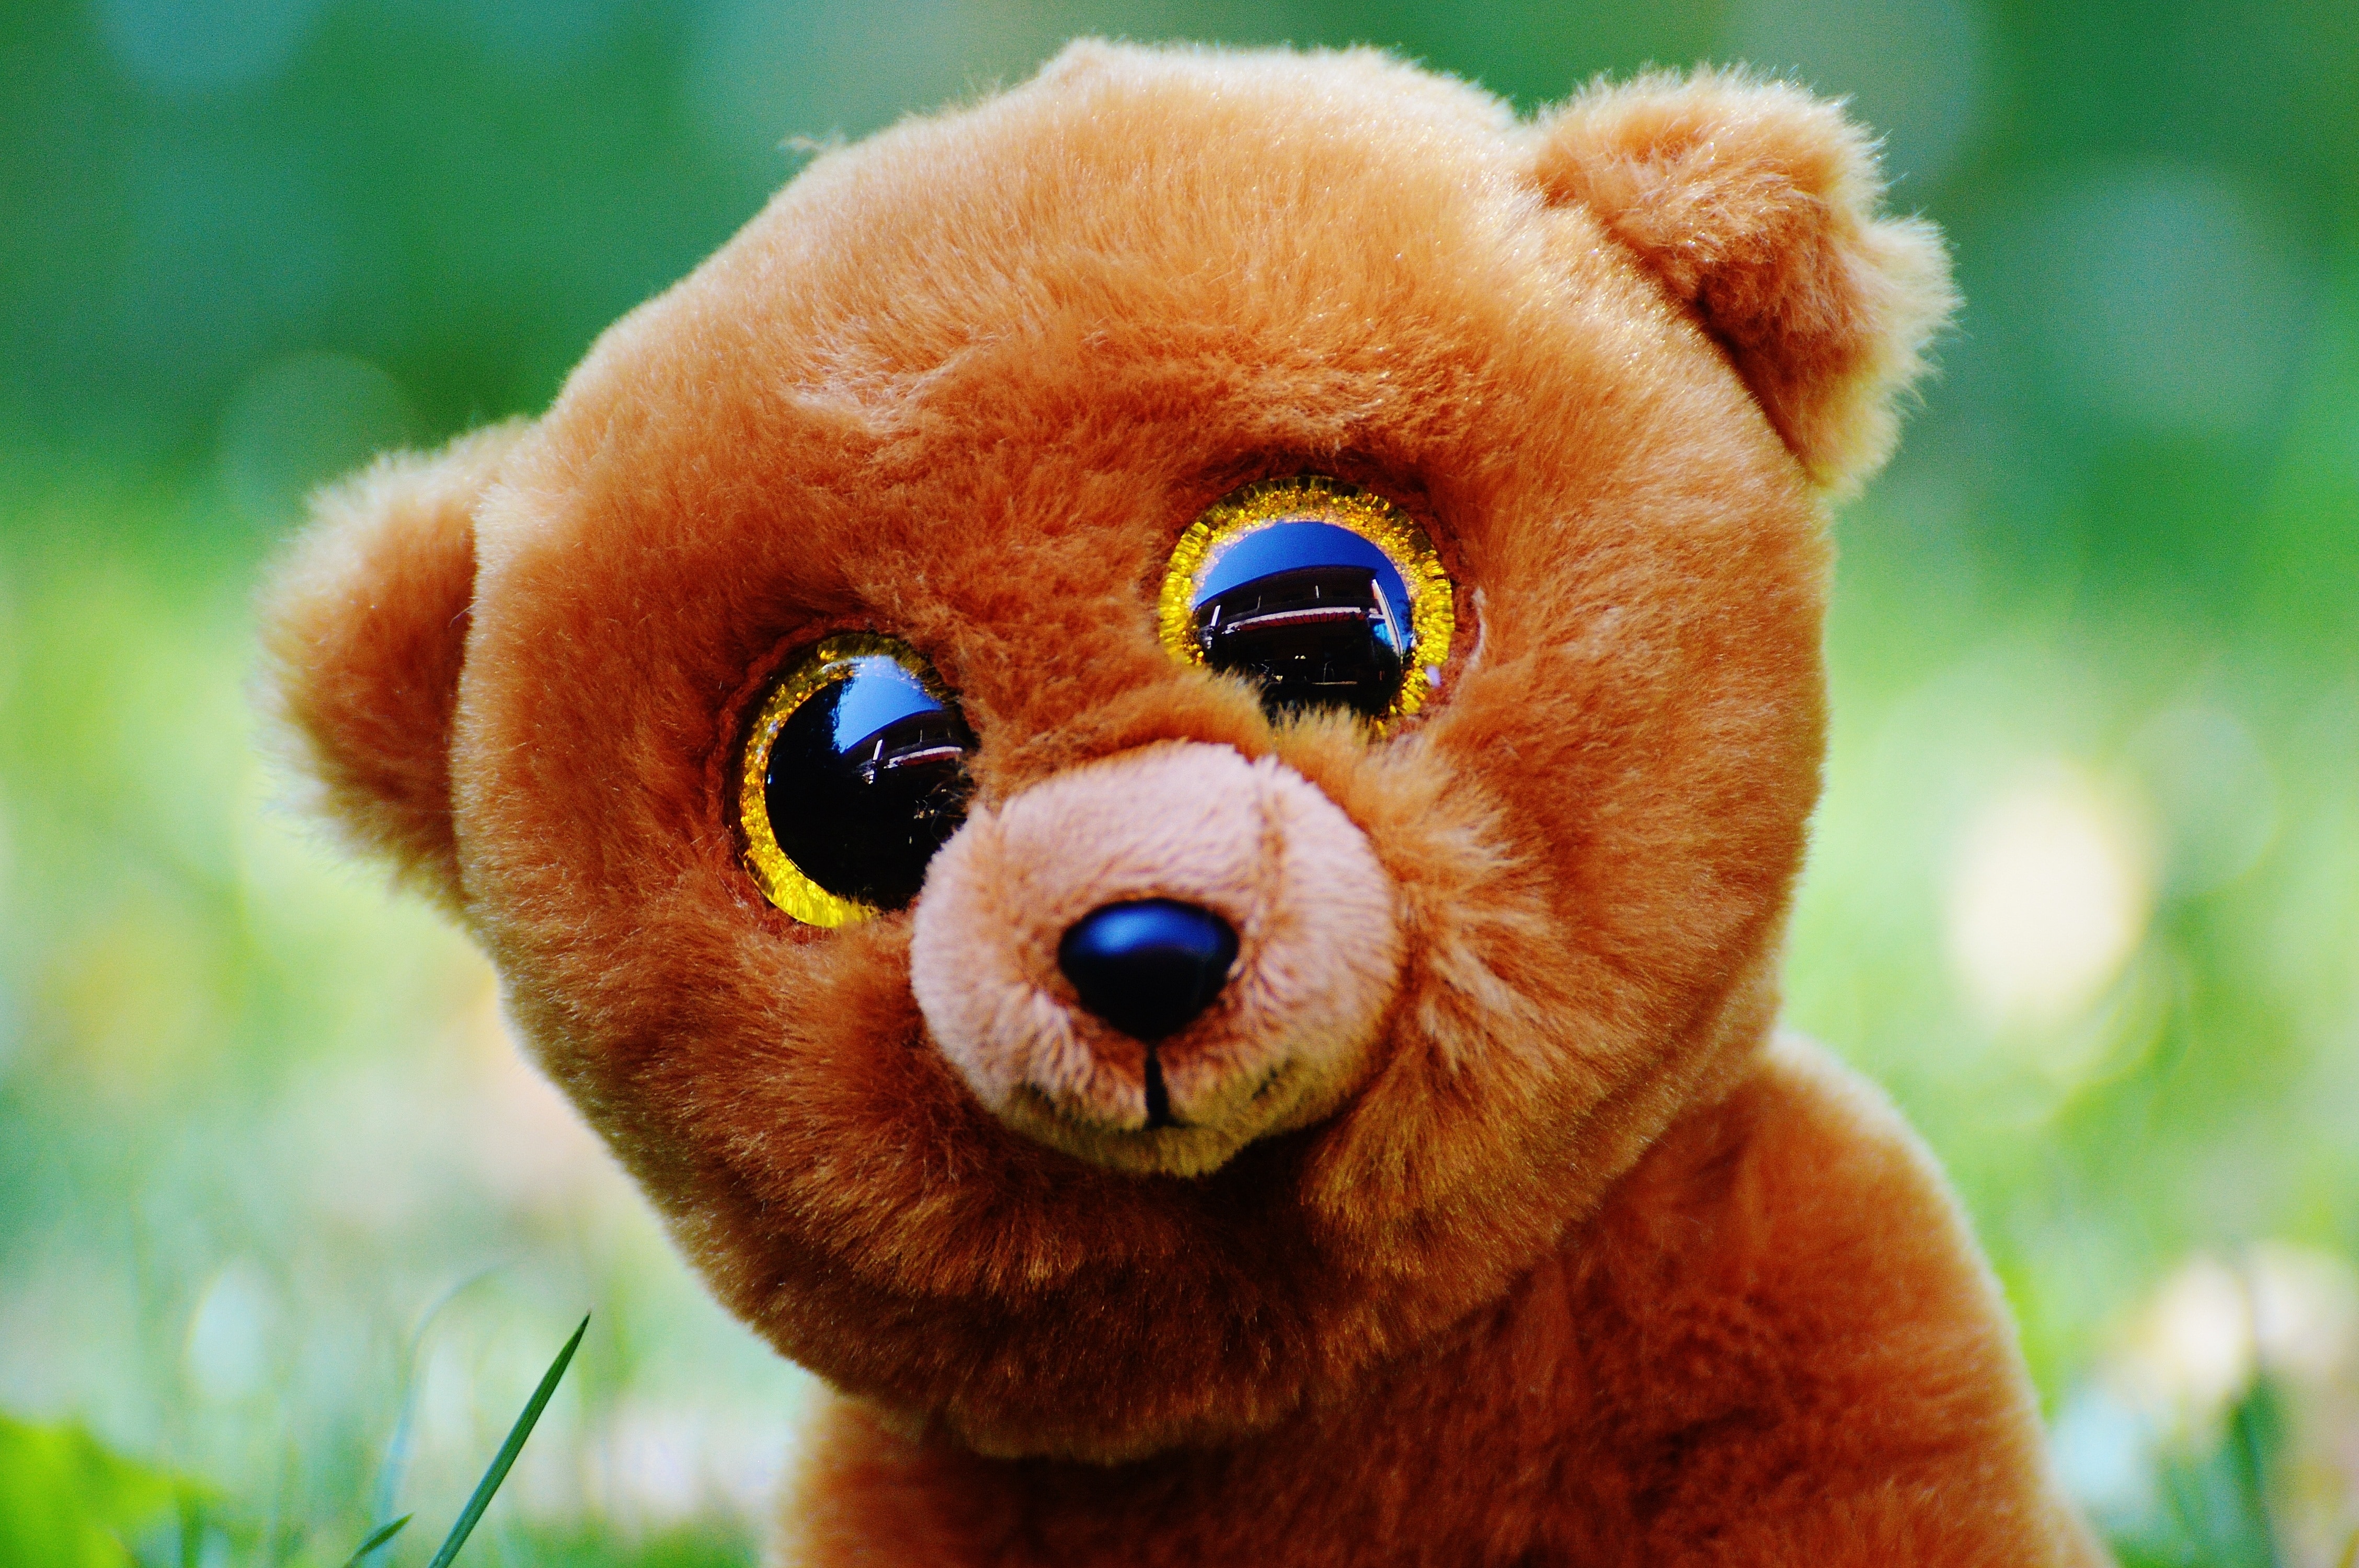 Stuffed Animal, Teddy Bear, Glitter Eyes, dog, one animal